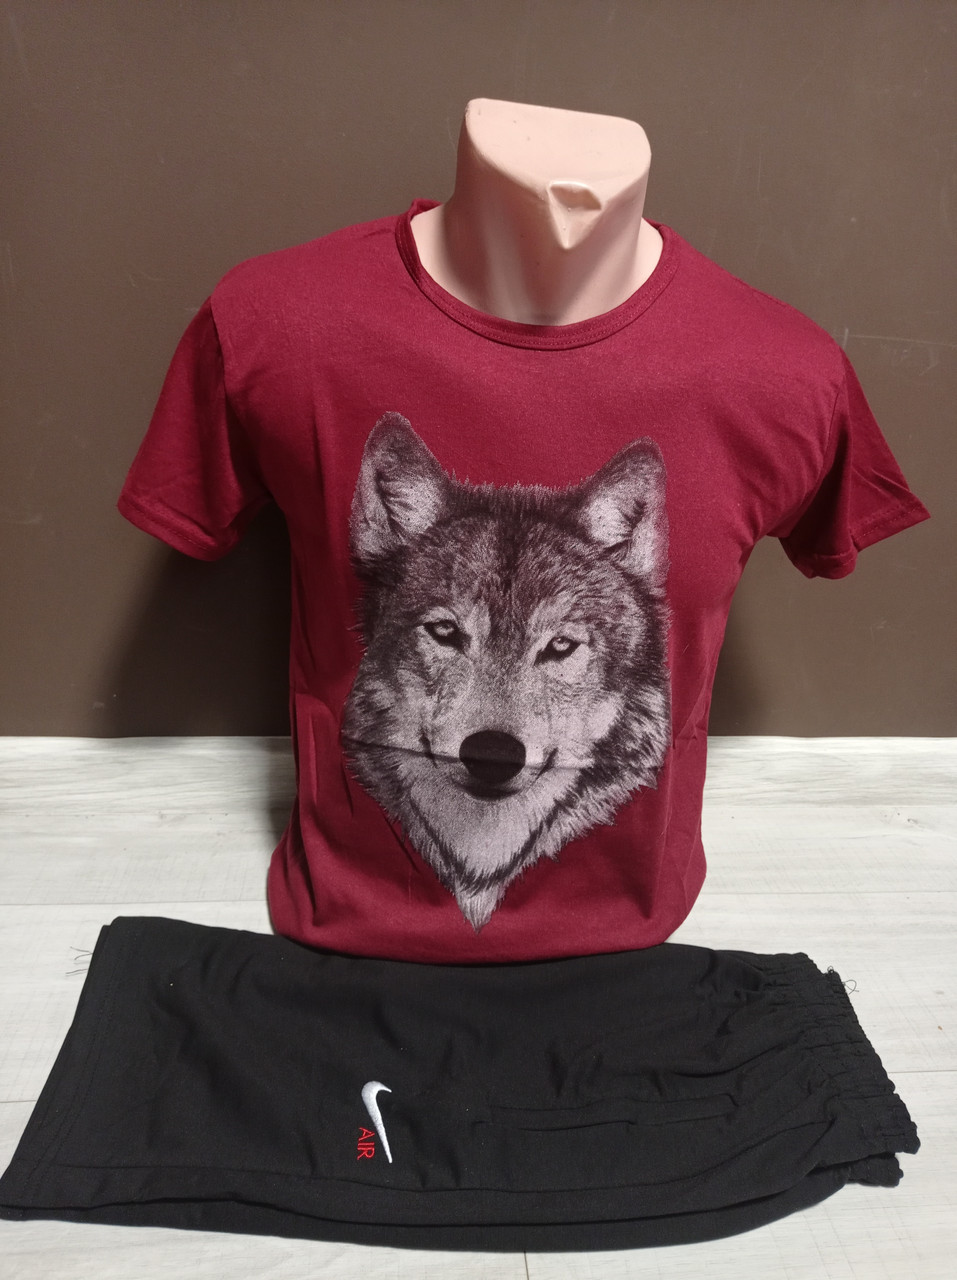 Літній підлітковий костюм для хлопчика підлітка Вовк бордо футболка і шорти 12-18 років